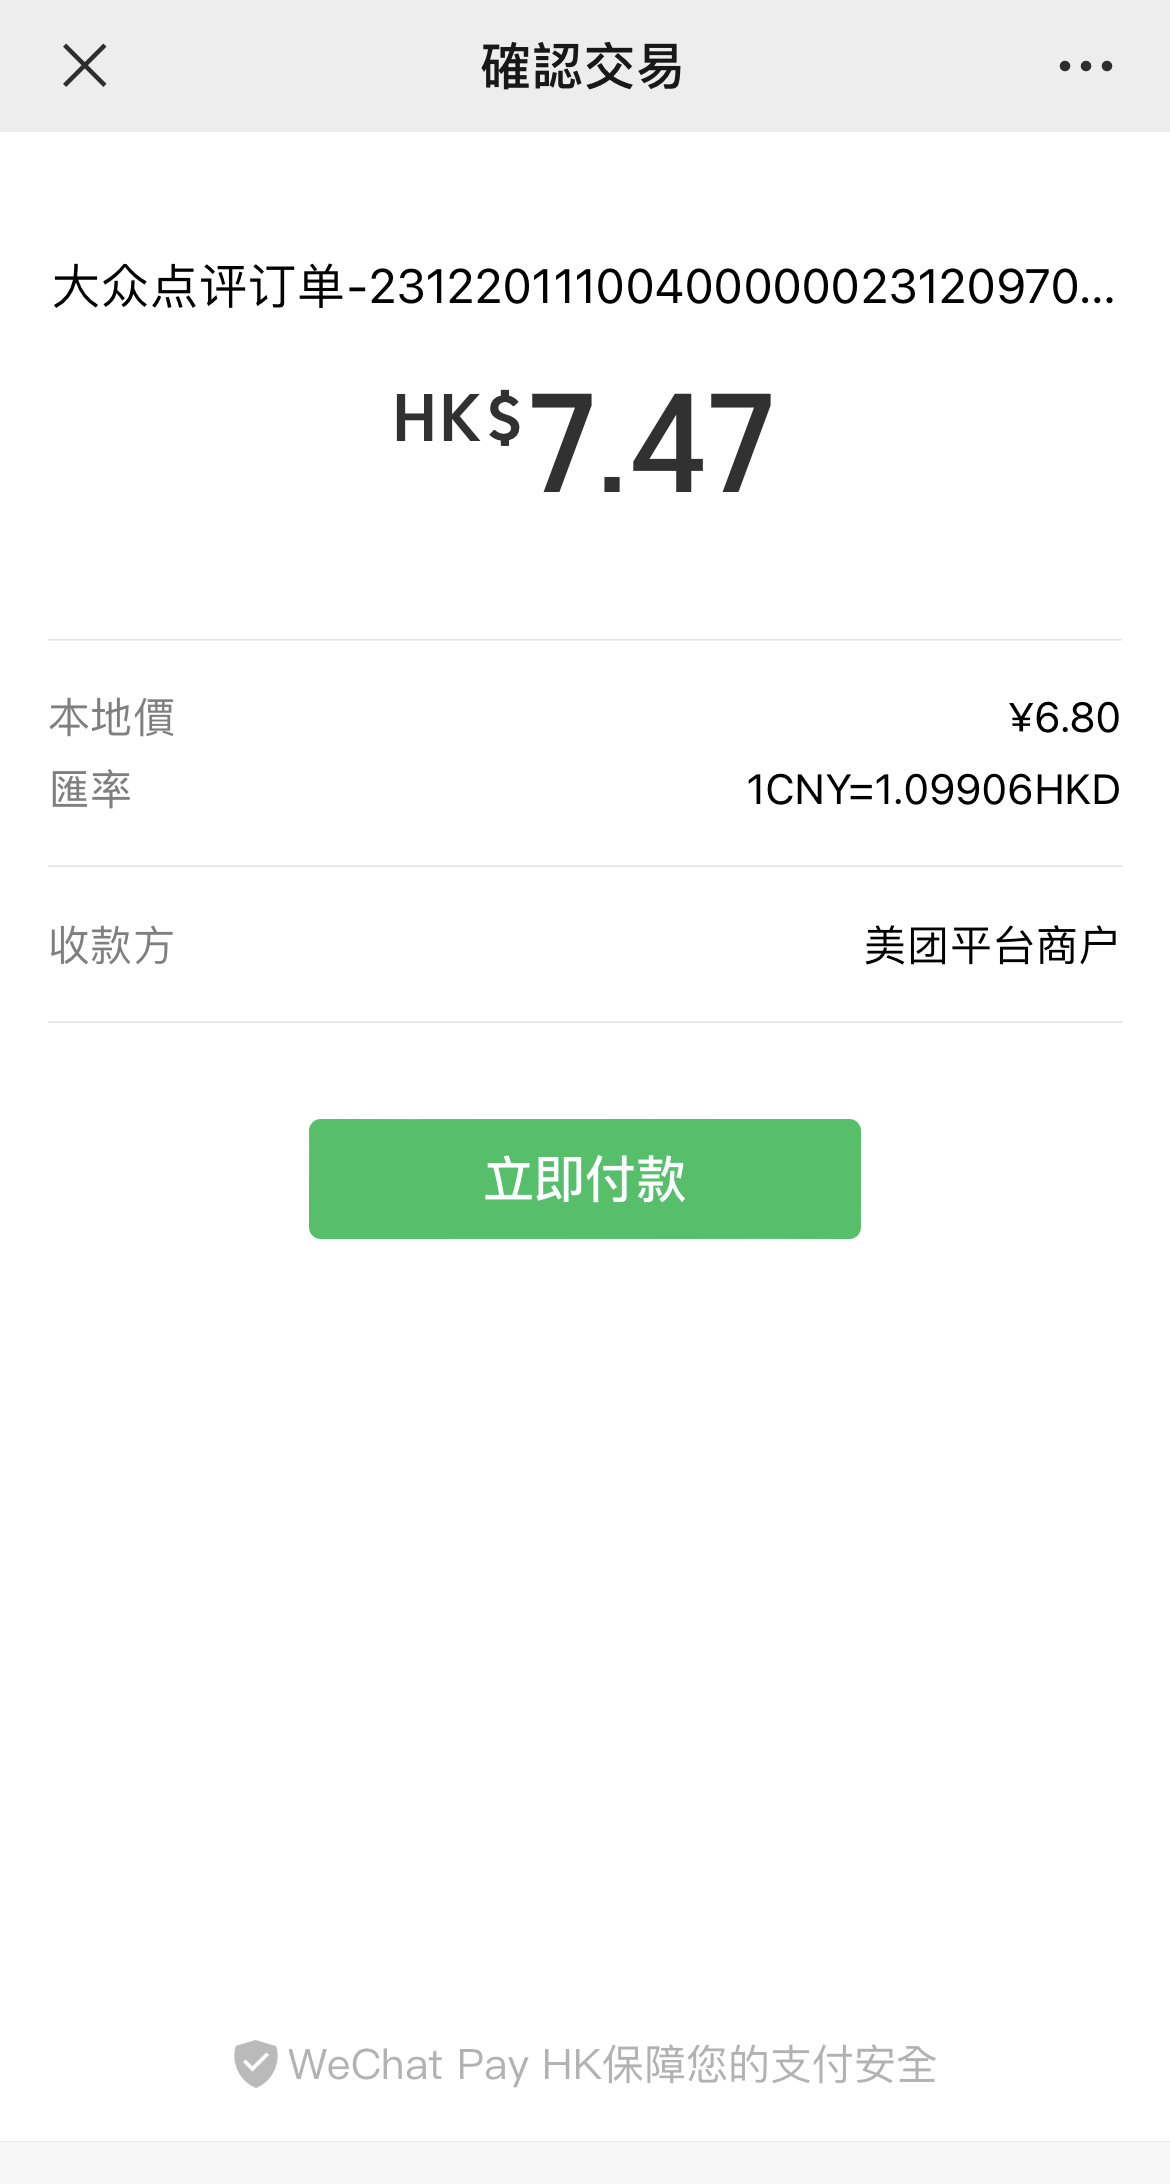 跳轉微信支付（錢包地區：香港）會自動換算成港幣匯率